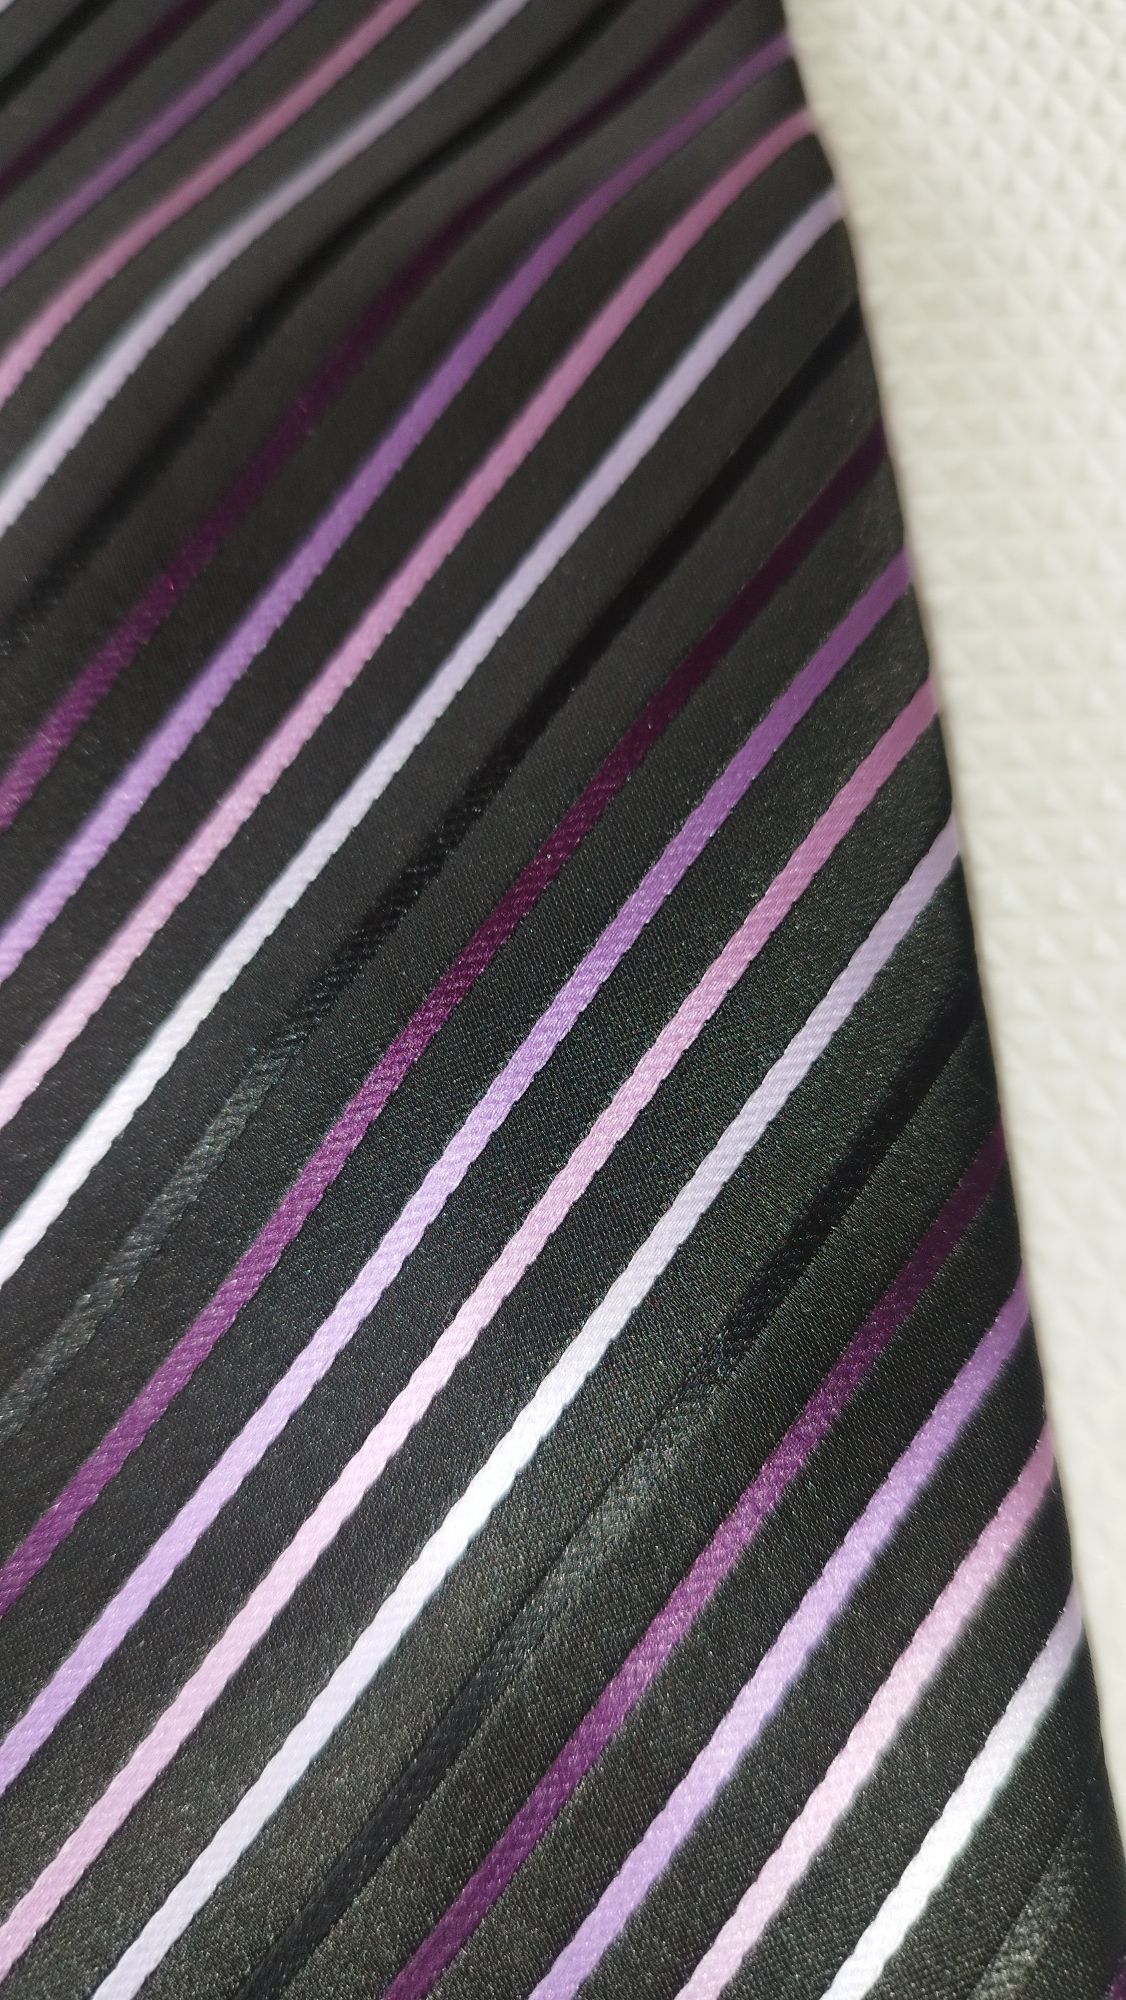 Krawat Giorgio Valention * Italy Mode * krawat męski czarny fioletowy